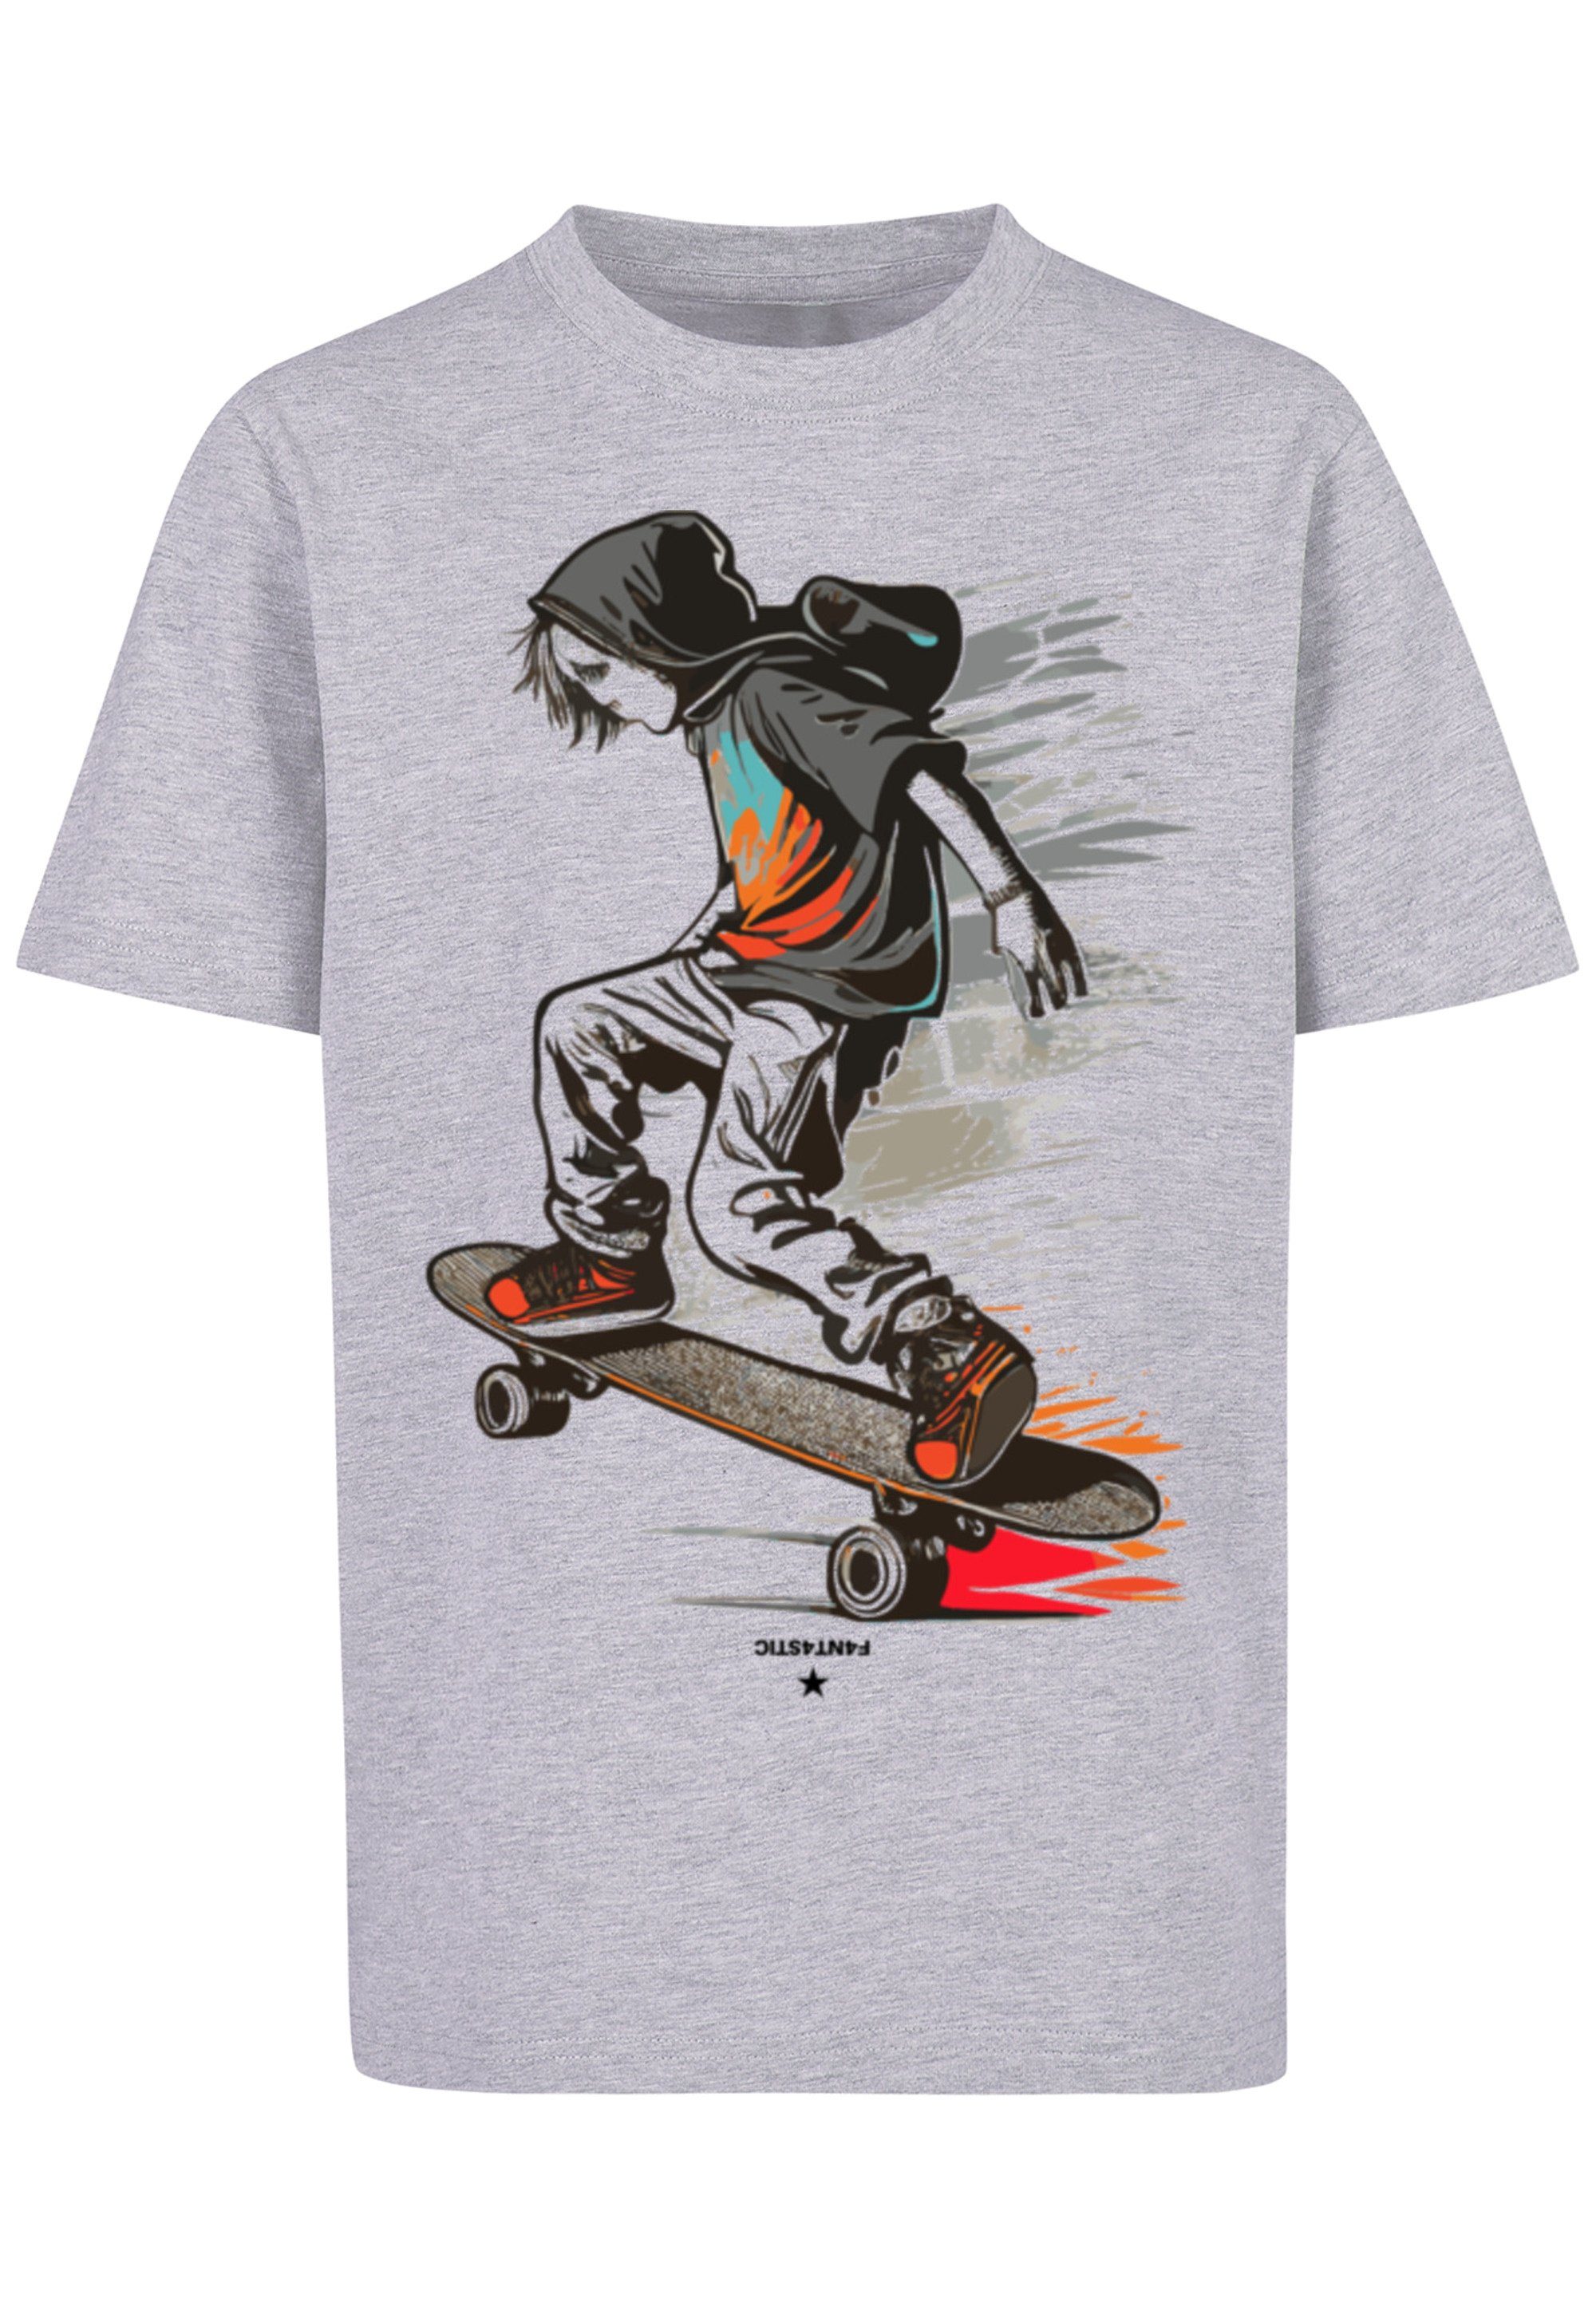 F4NT4STIC T-Shirt Skateboarder Print, Das Model ist 145 cm groß und trägt  Größe 145/152